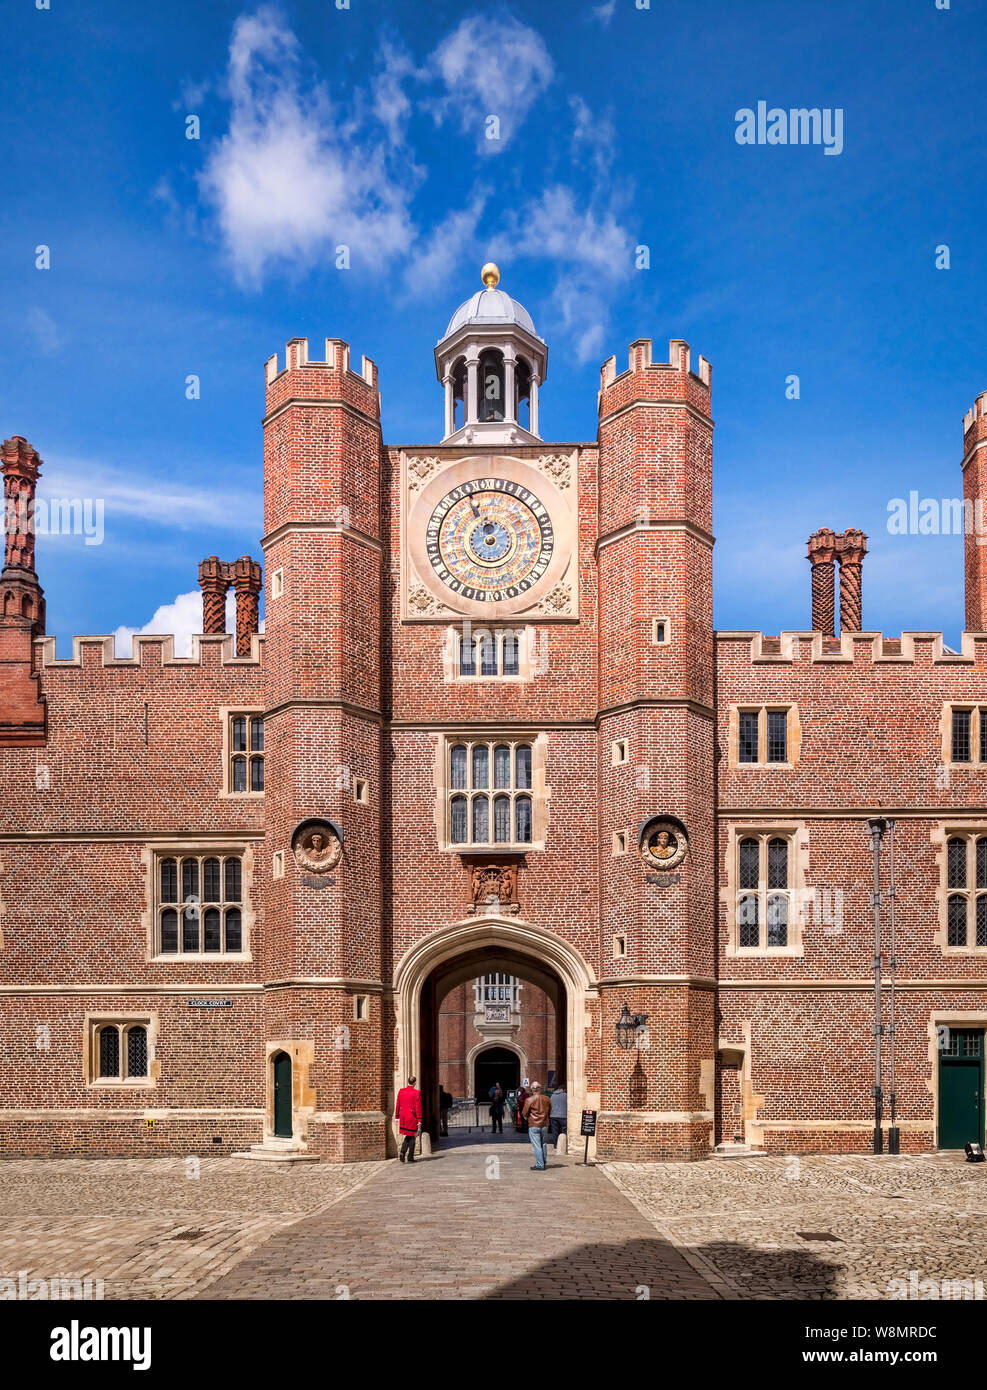 9 juin 2019 : Richmond upon Thames, London, UK - Anne Boleyn's Gate, la porte de l'horloge Cour dans le Palais de Hampton Court, l'ancien royal residen Banque D'Images